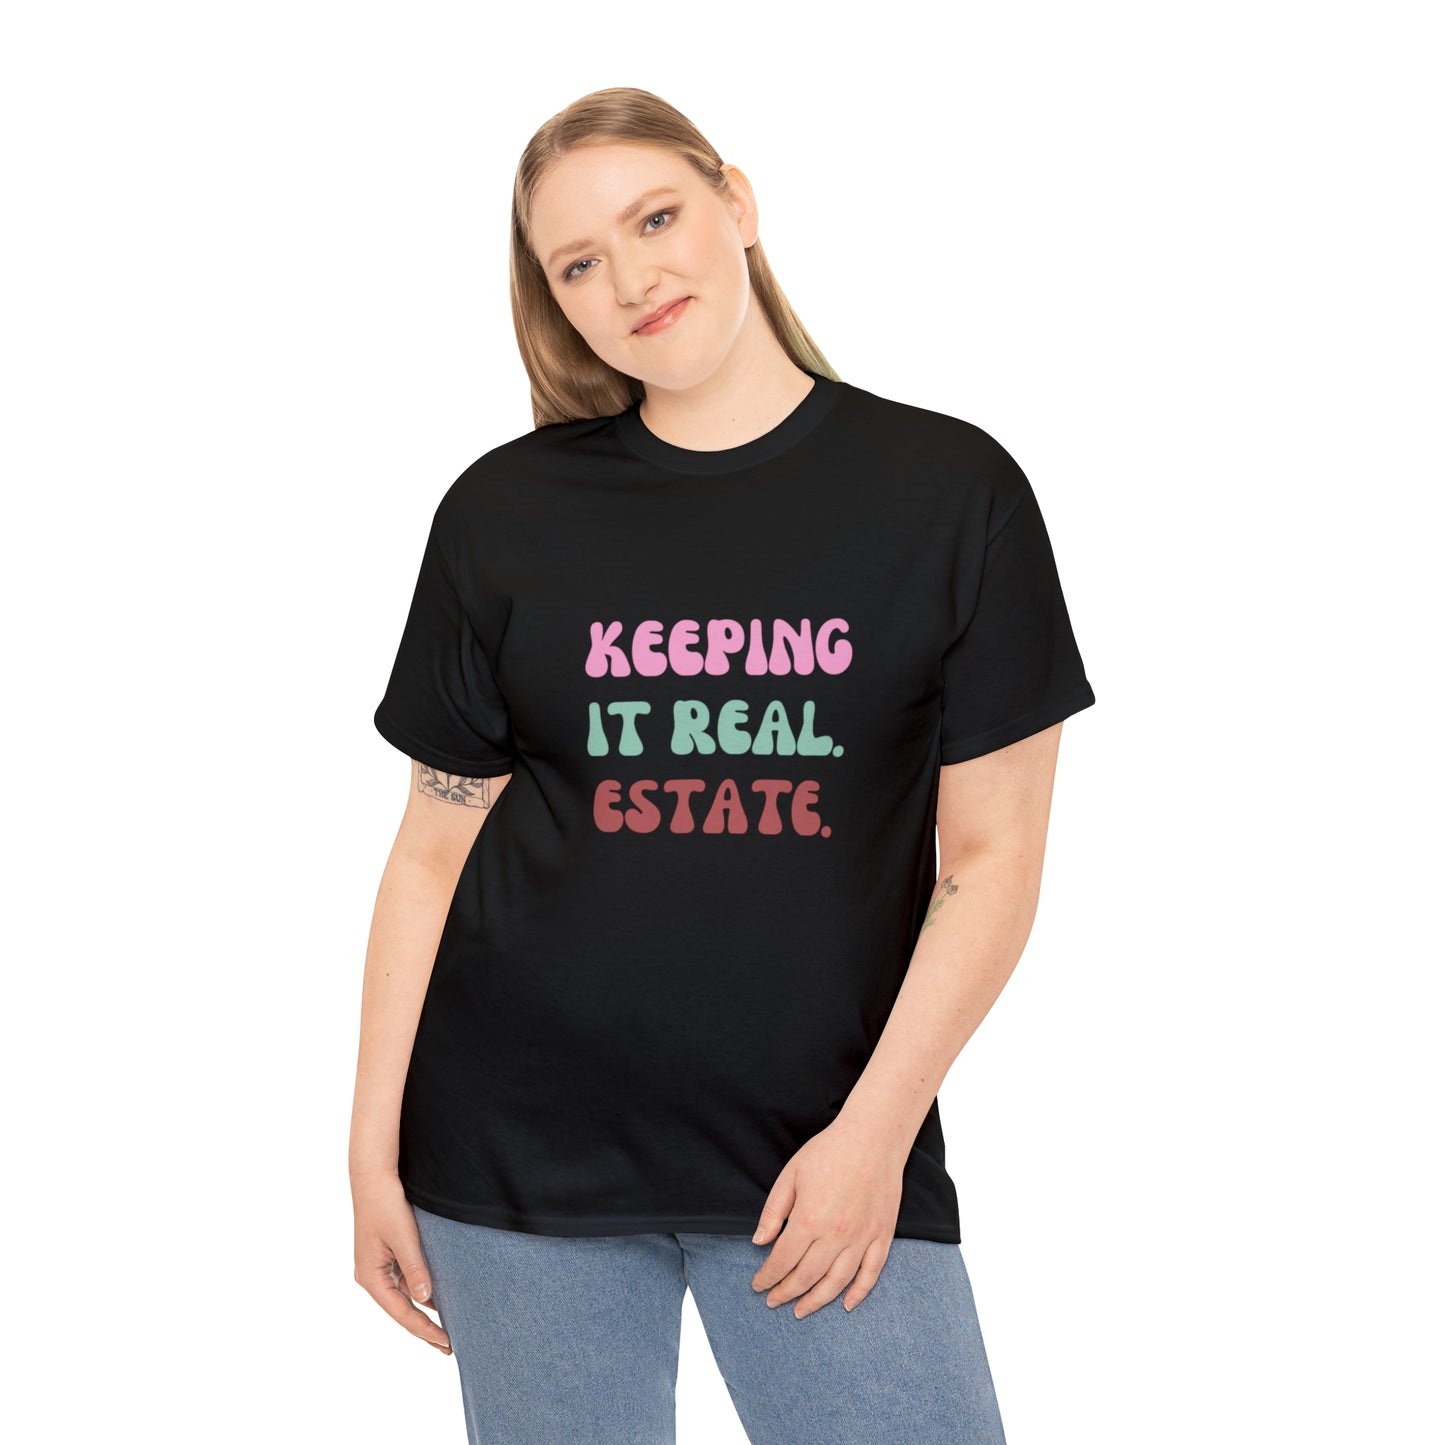 Unisex Men's or Women's T-Shirt "KEEPING IT REAL ESTATE" tee shirt (SKEEP)